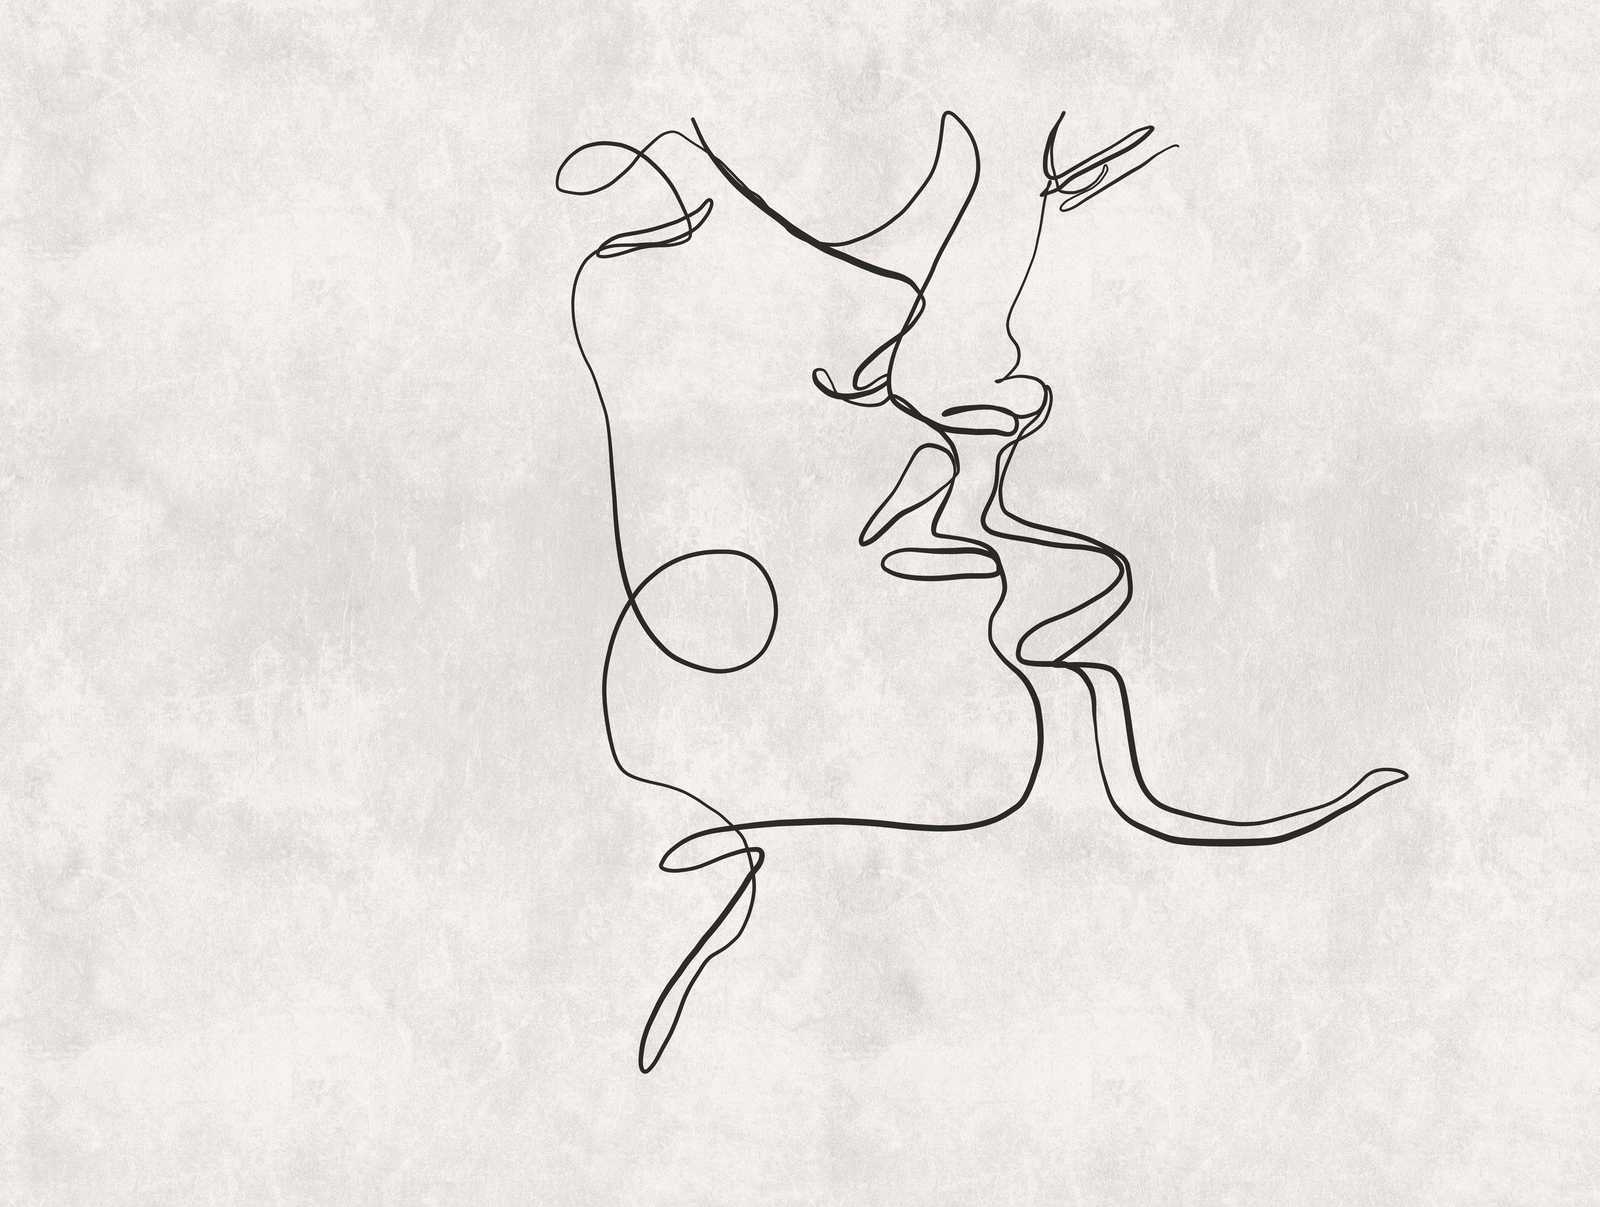             Behang noviteit - Line Art motief behang kussen met gipslook
        